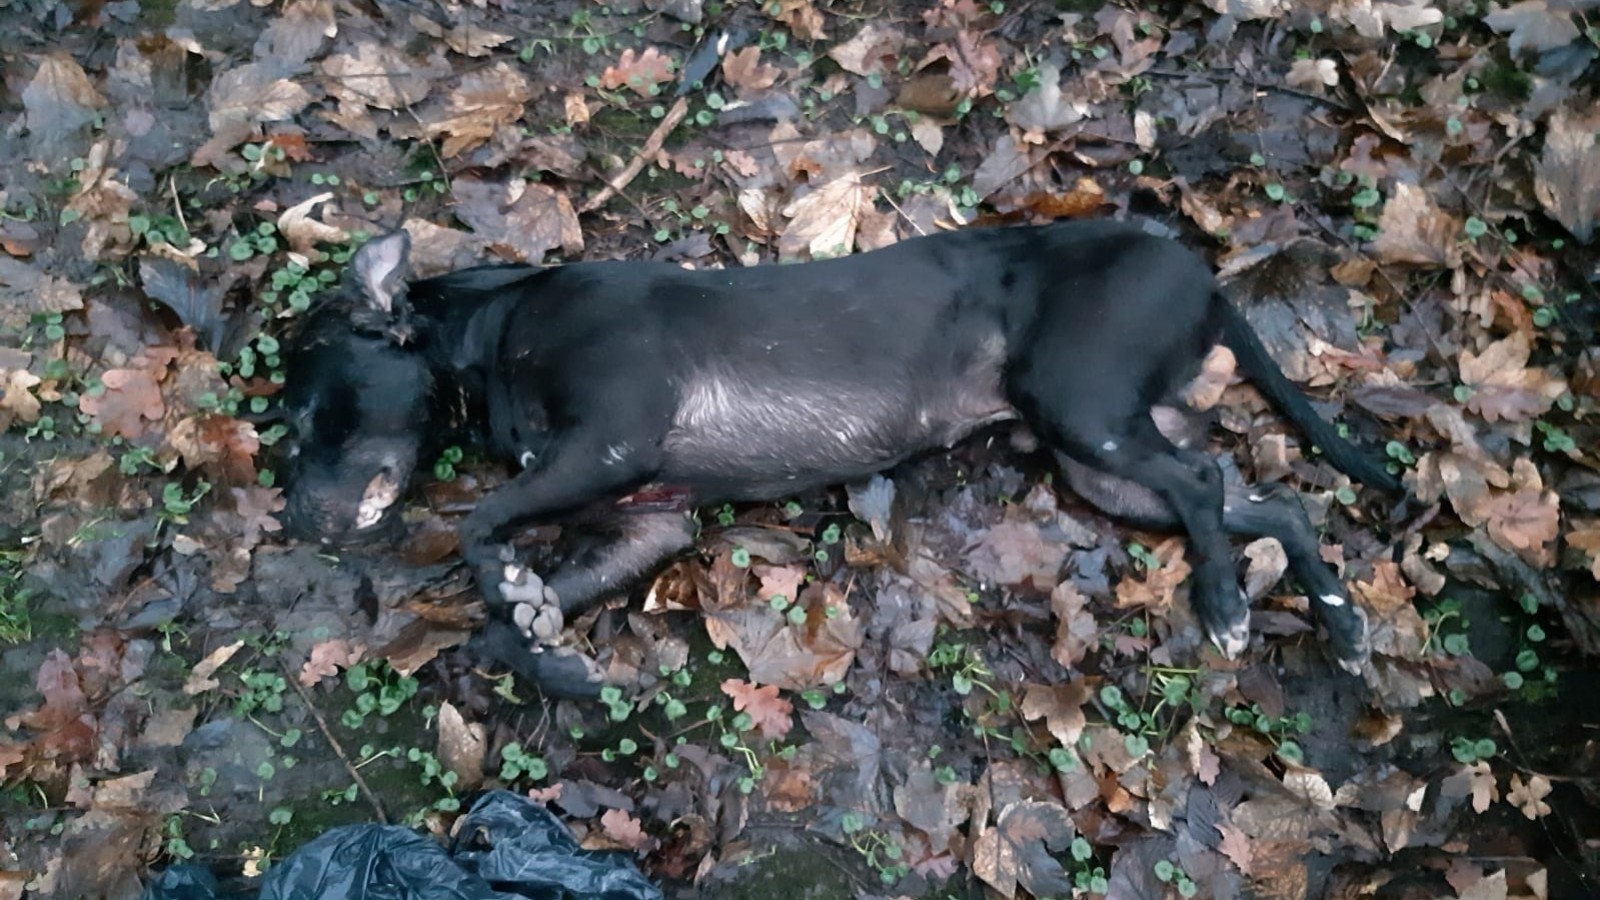 Dode hond met verwondingen gevonden in Vliegenbos in - NH Nieuws